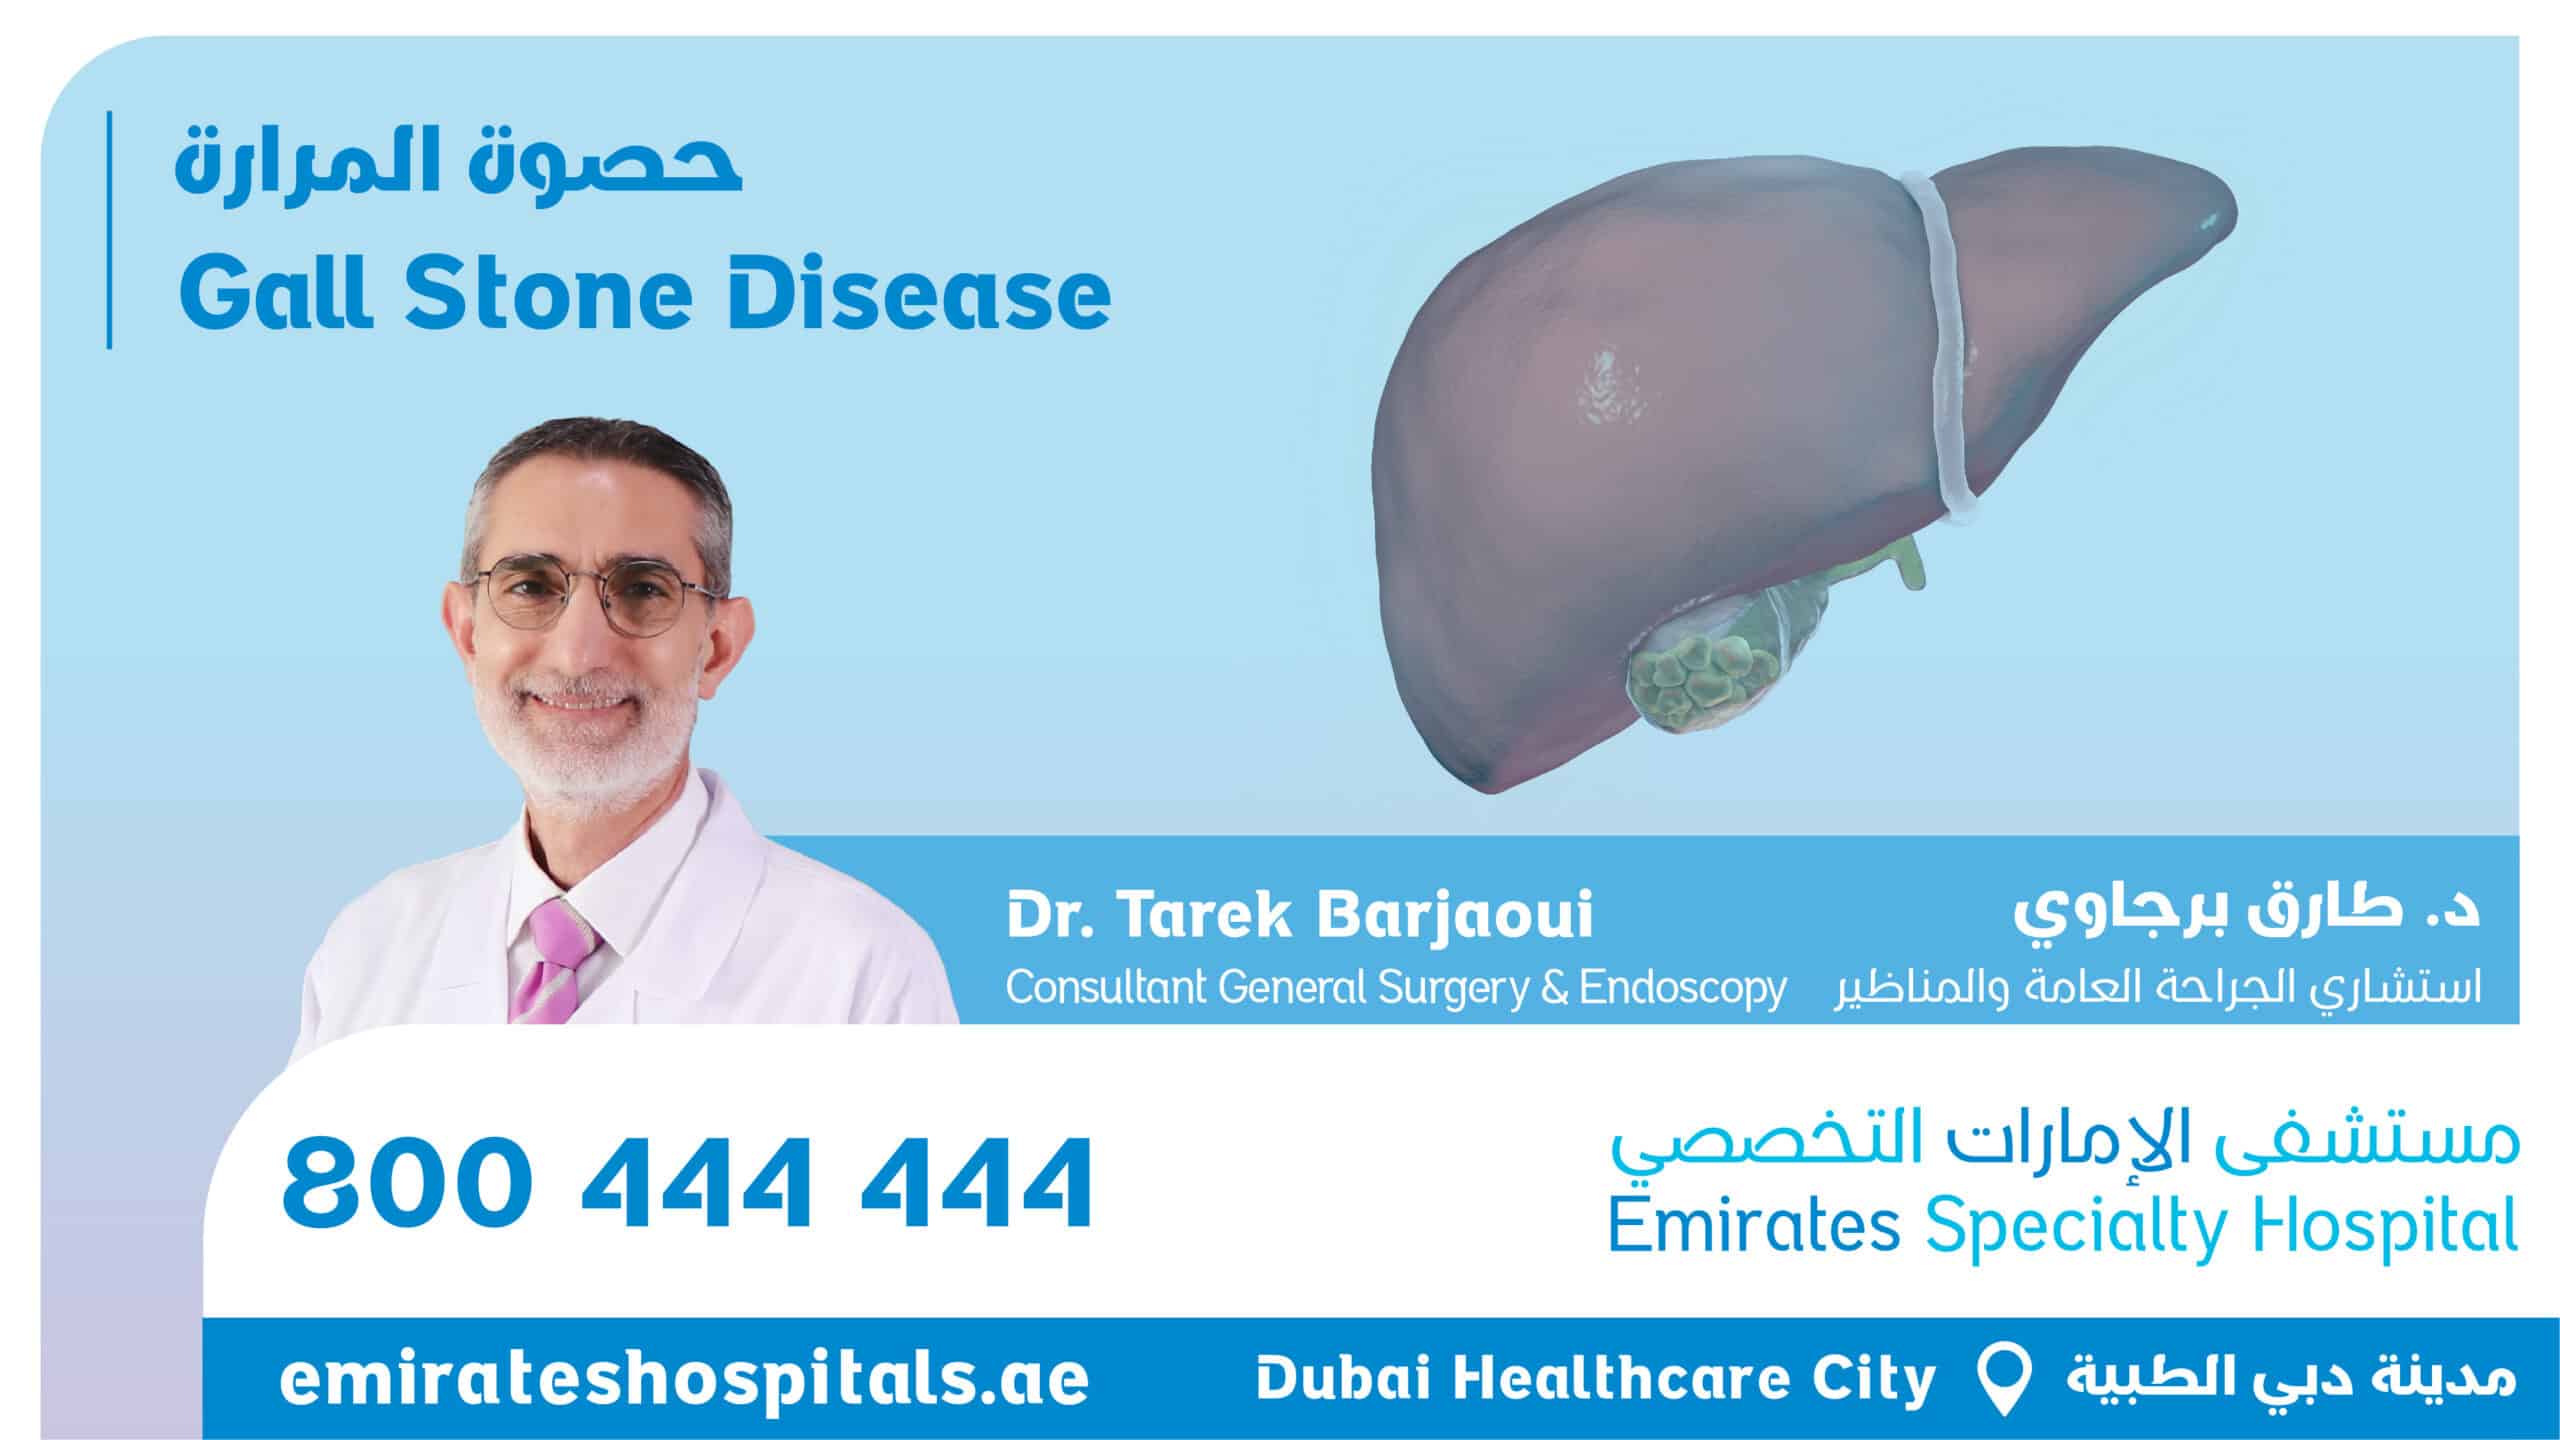 Gallstone Disease | Dr. Tarek Barjaoui, Consultant General